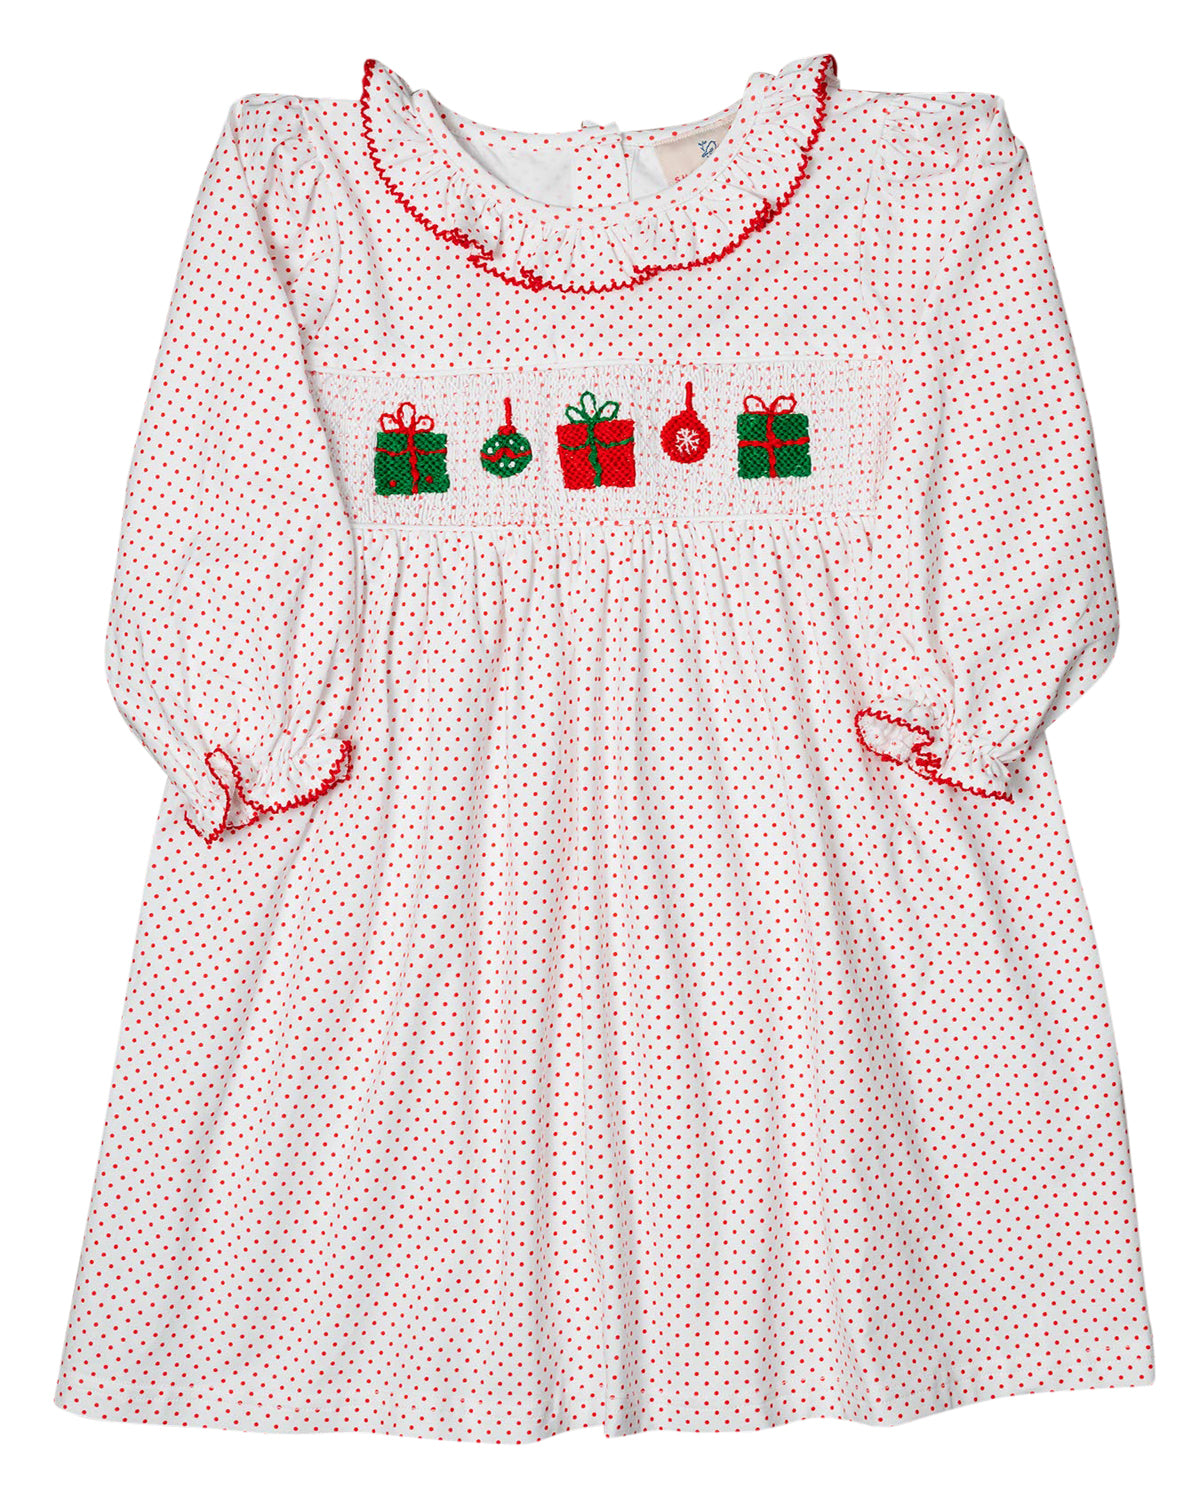 Presents Smocked Polka Dot Knit Dress- FINAL SALE